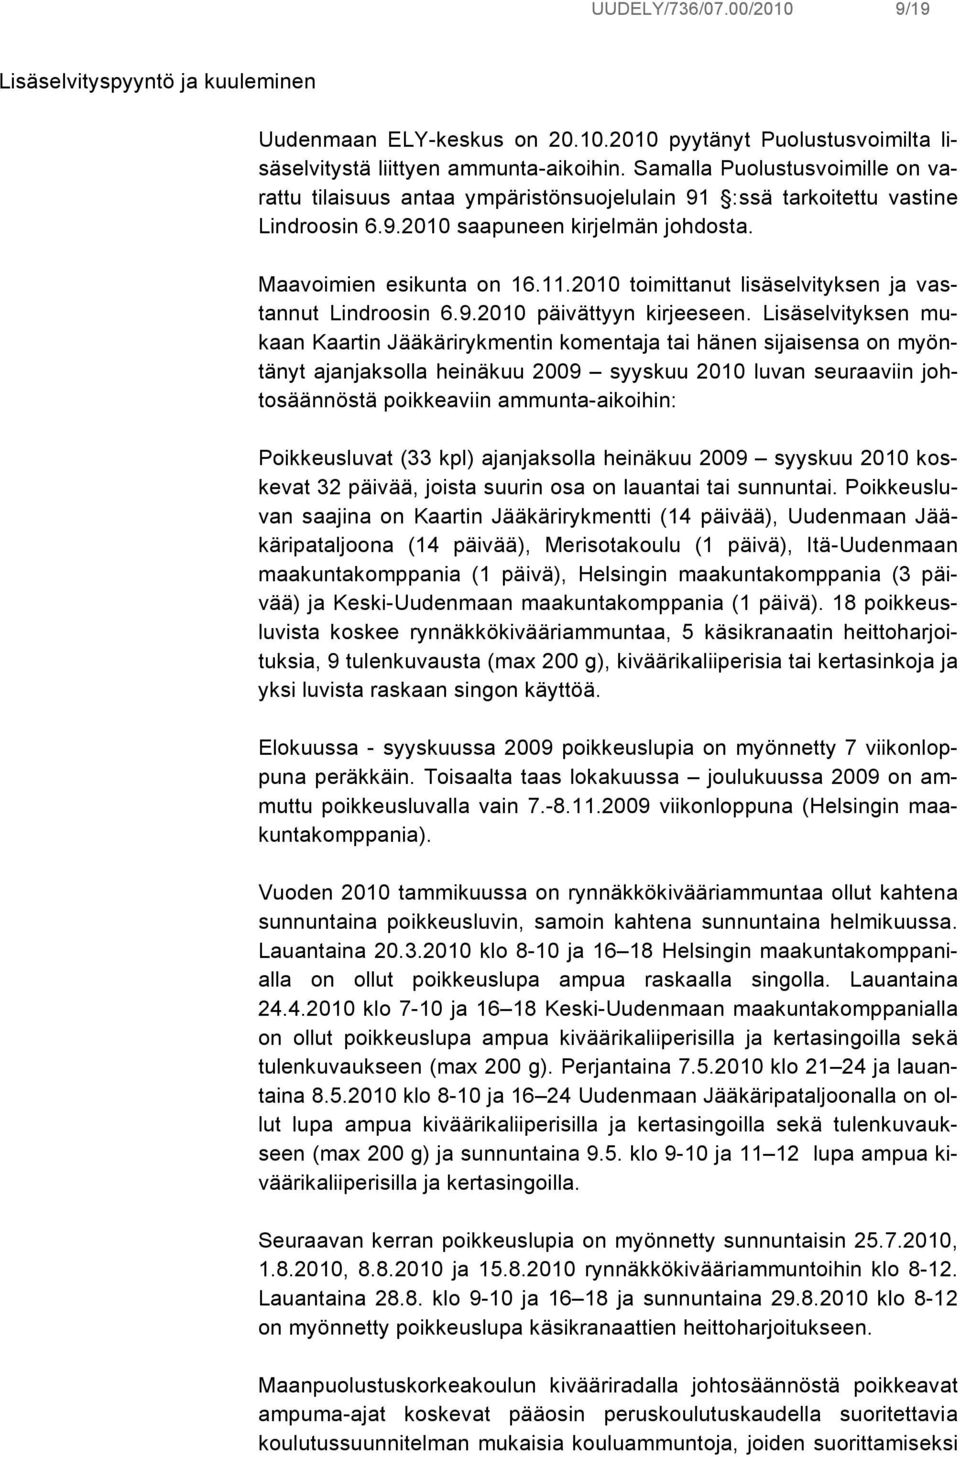 2010 toimittanut lisäselvityksen ja vastannut Lindroosin 6.9.2010 päivättyyn kirjeeseen.